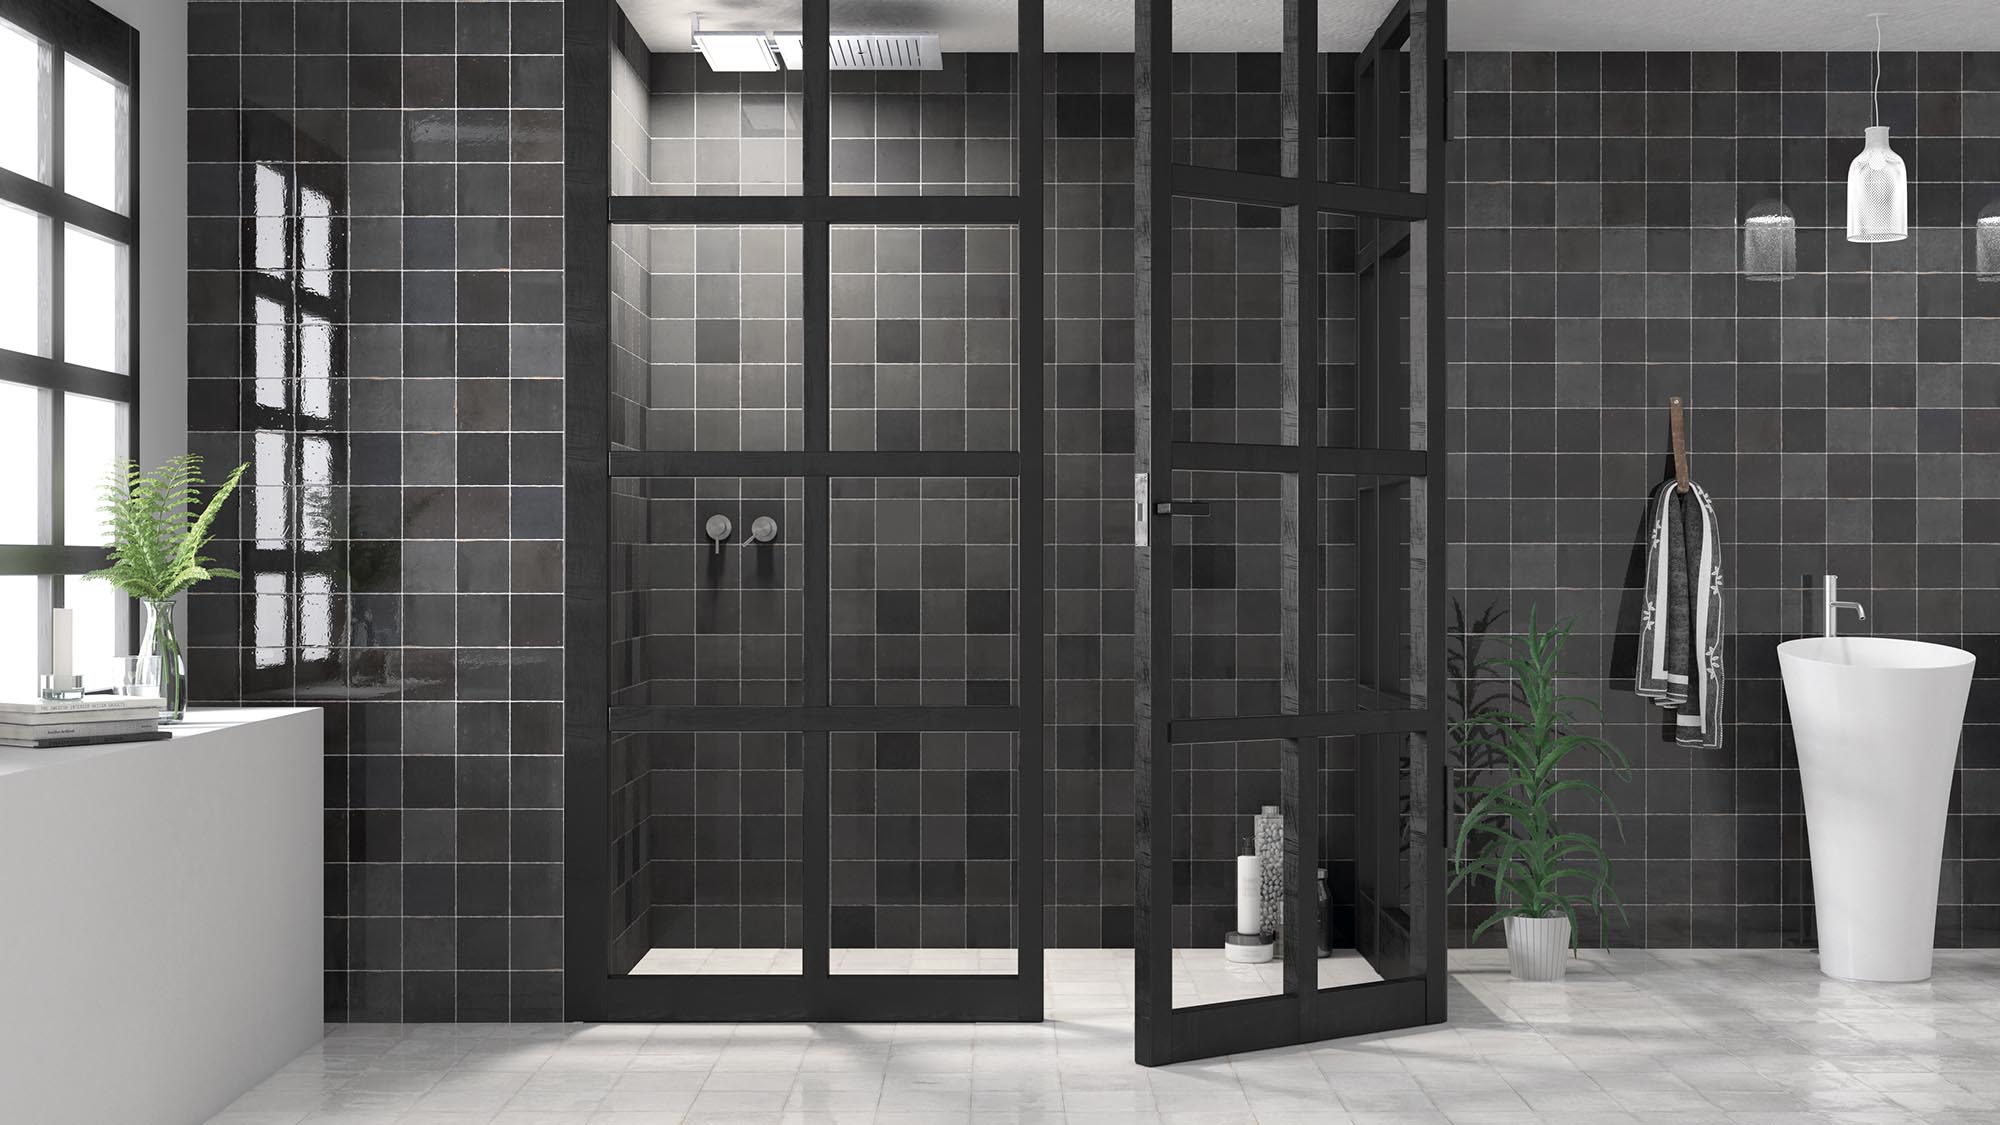 Ongekend Badkamer inspiratie met deze donkere badkamers - INTERIOR JUNKIE VE-76